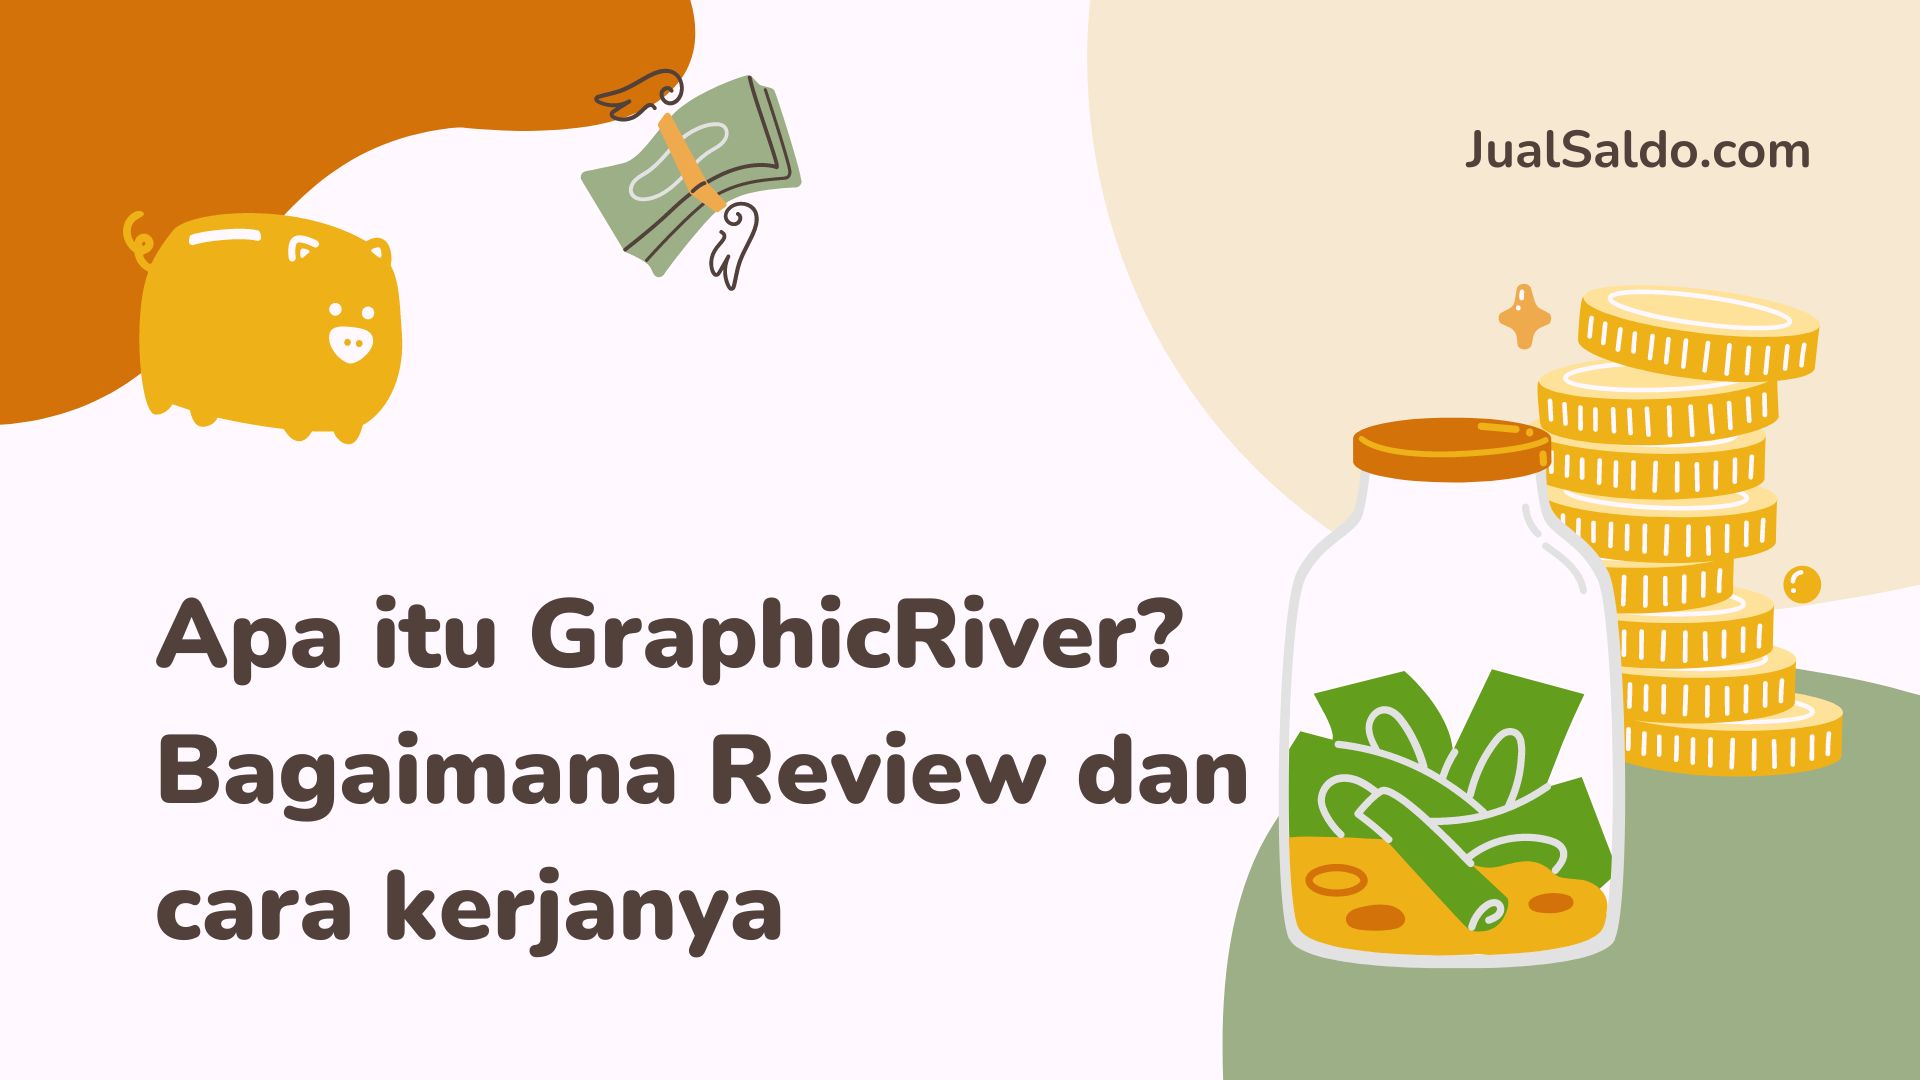 Apa itu GraphicRiver? Bagaimana Review dan cara kerjanya